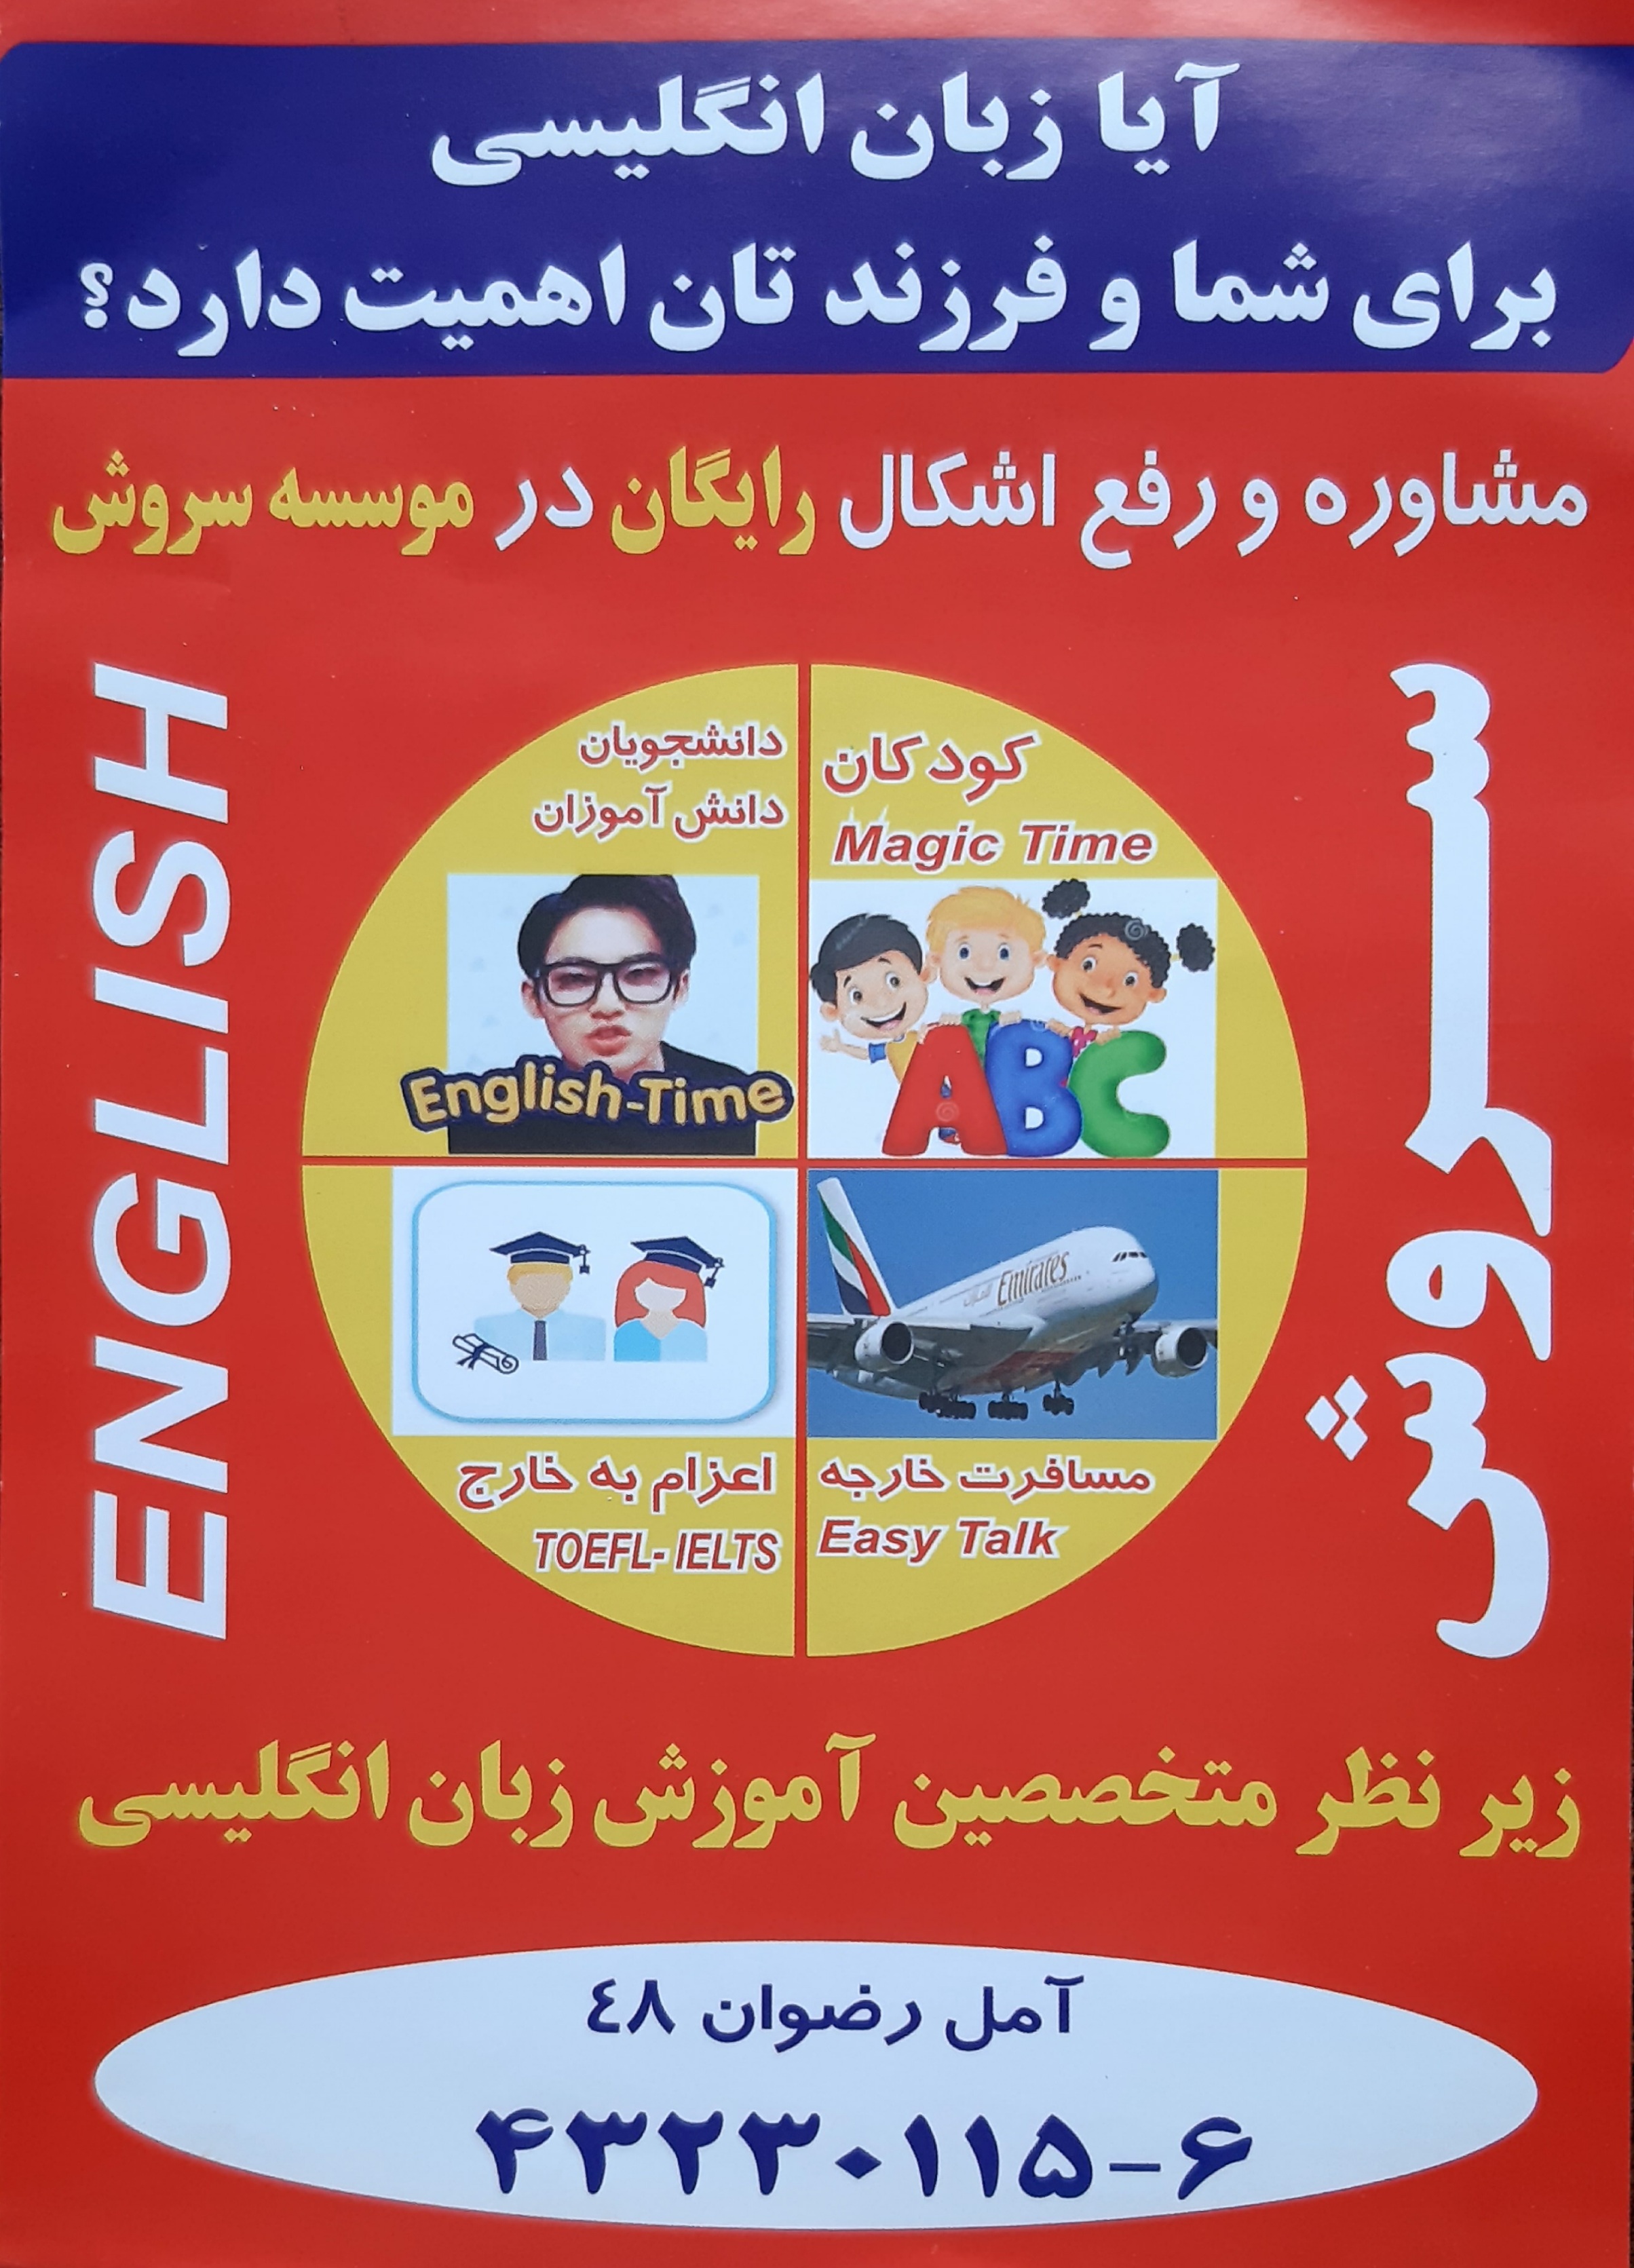 آموزشگاه زبانهای خارجه سروش